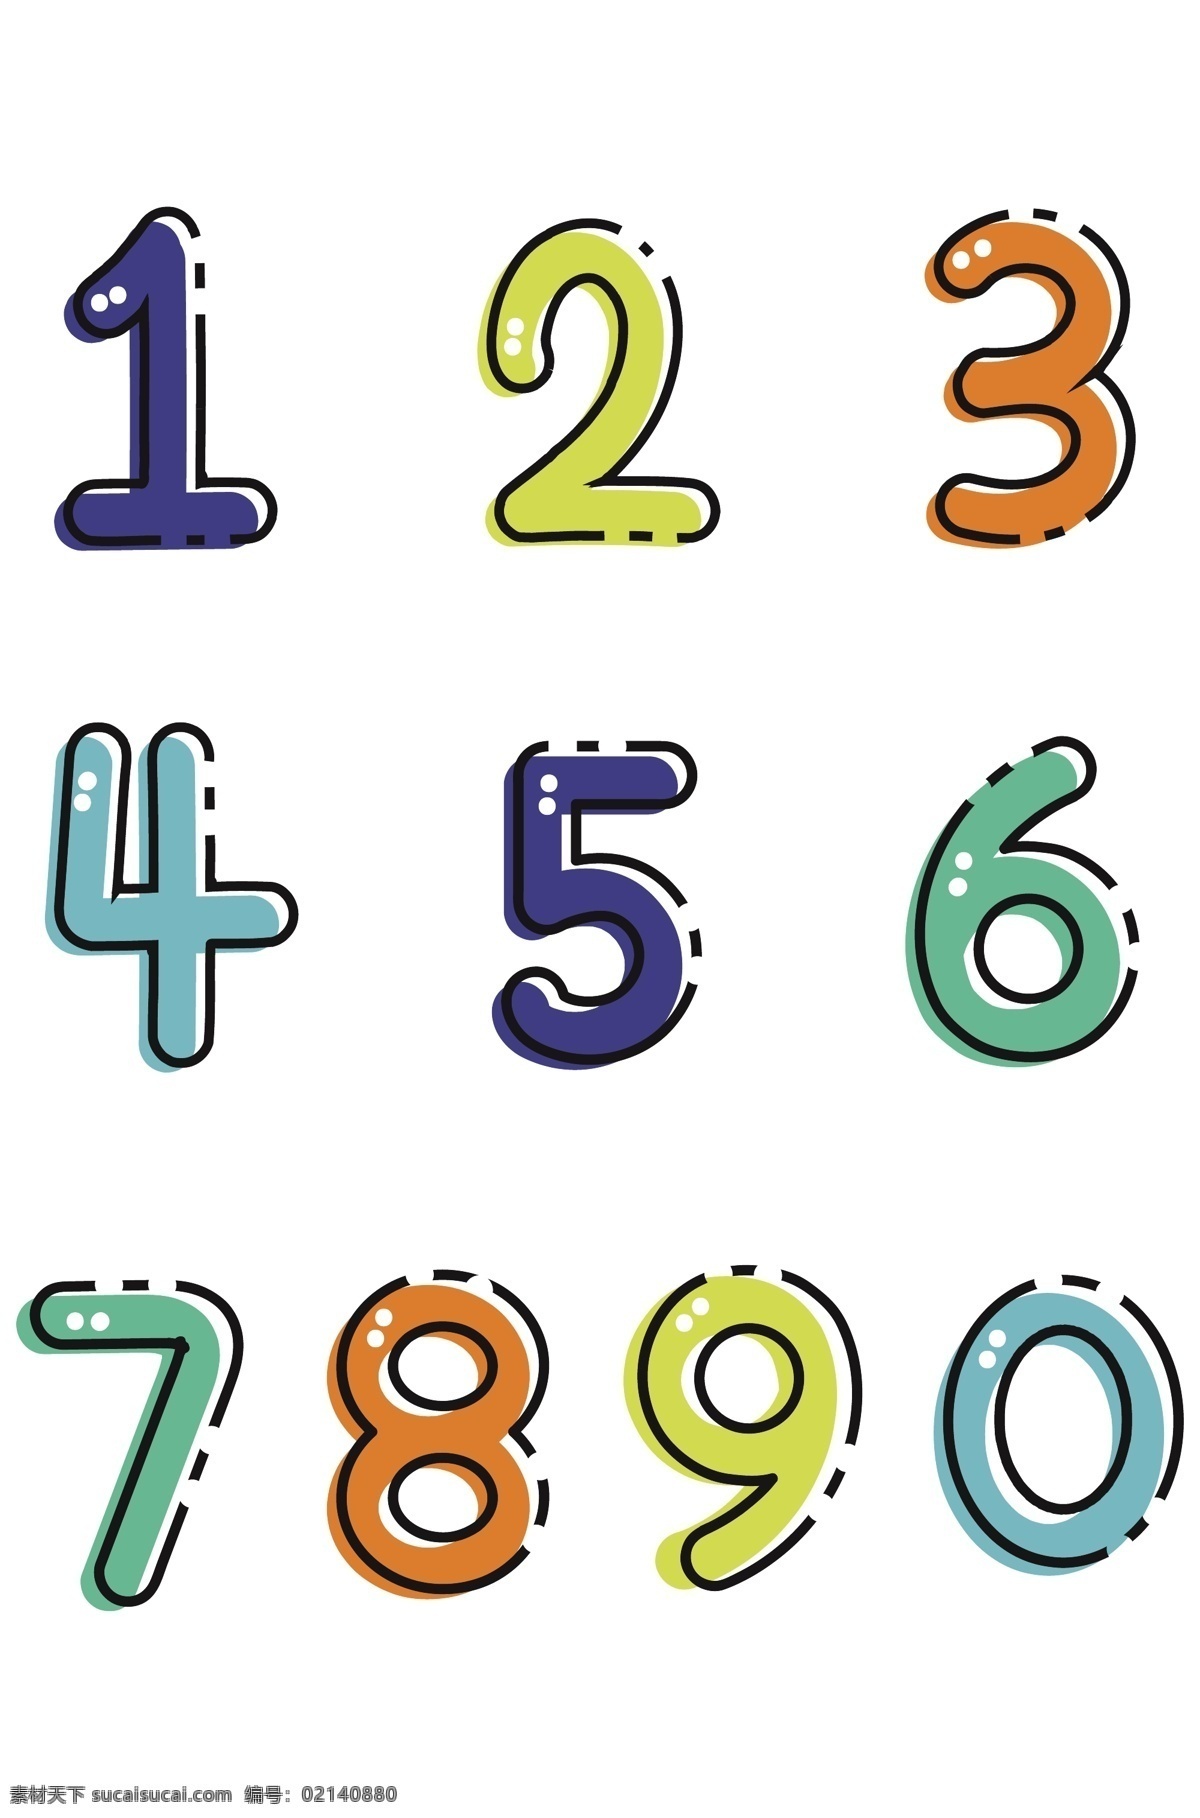 数字字体设计 数字 跑道字体设计 数字数字设计 创意数字 矢量数字字体 创意字体 书籍数字 字体设计 阿拉伯数字 艺术字